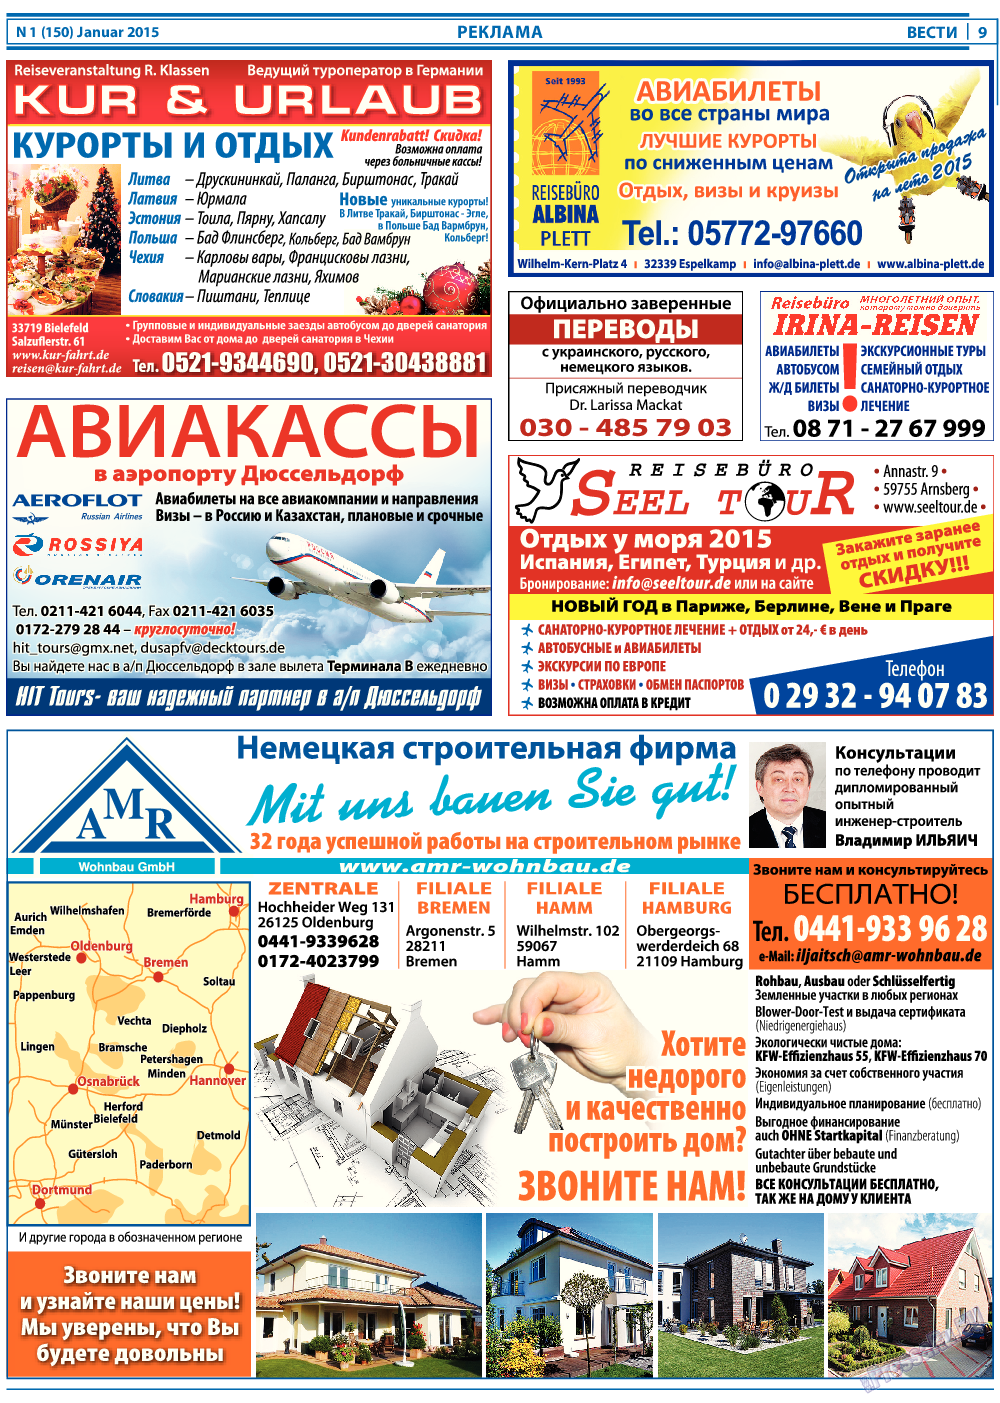 Вести, газета. 2015 №1 стр.9